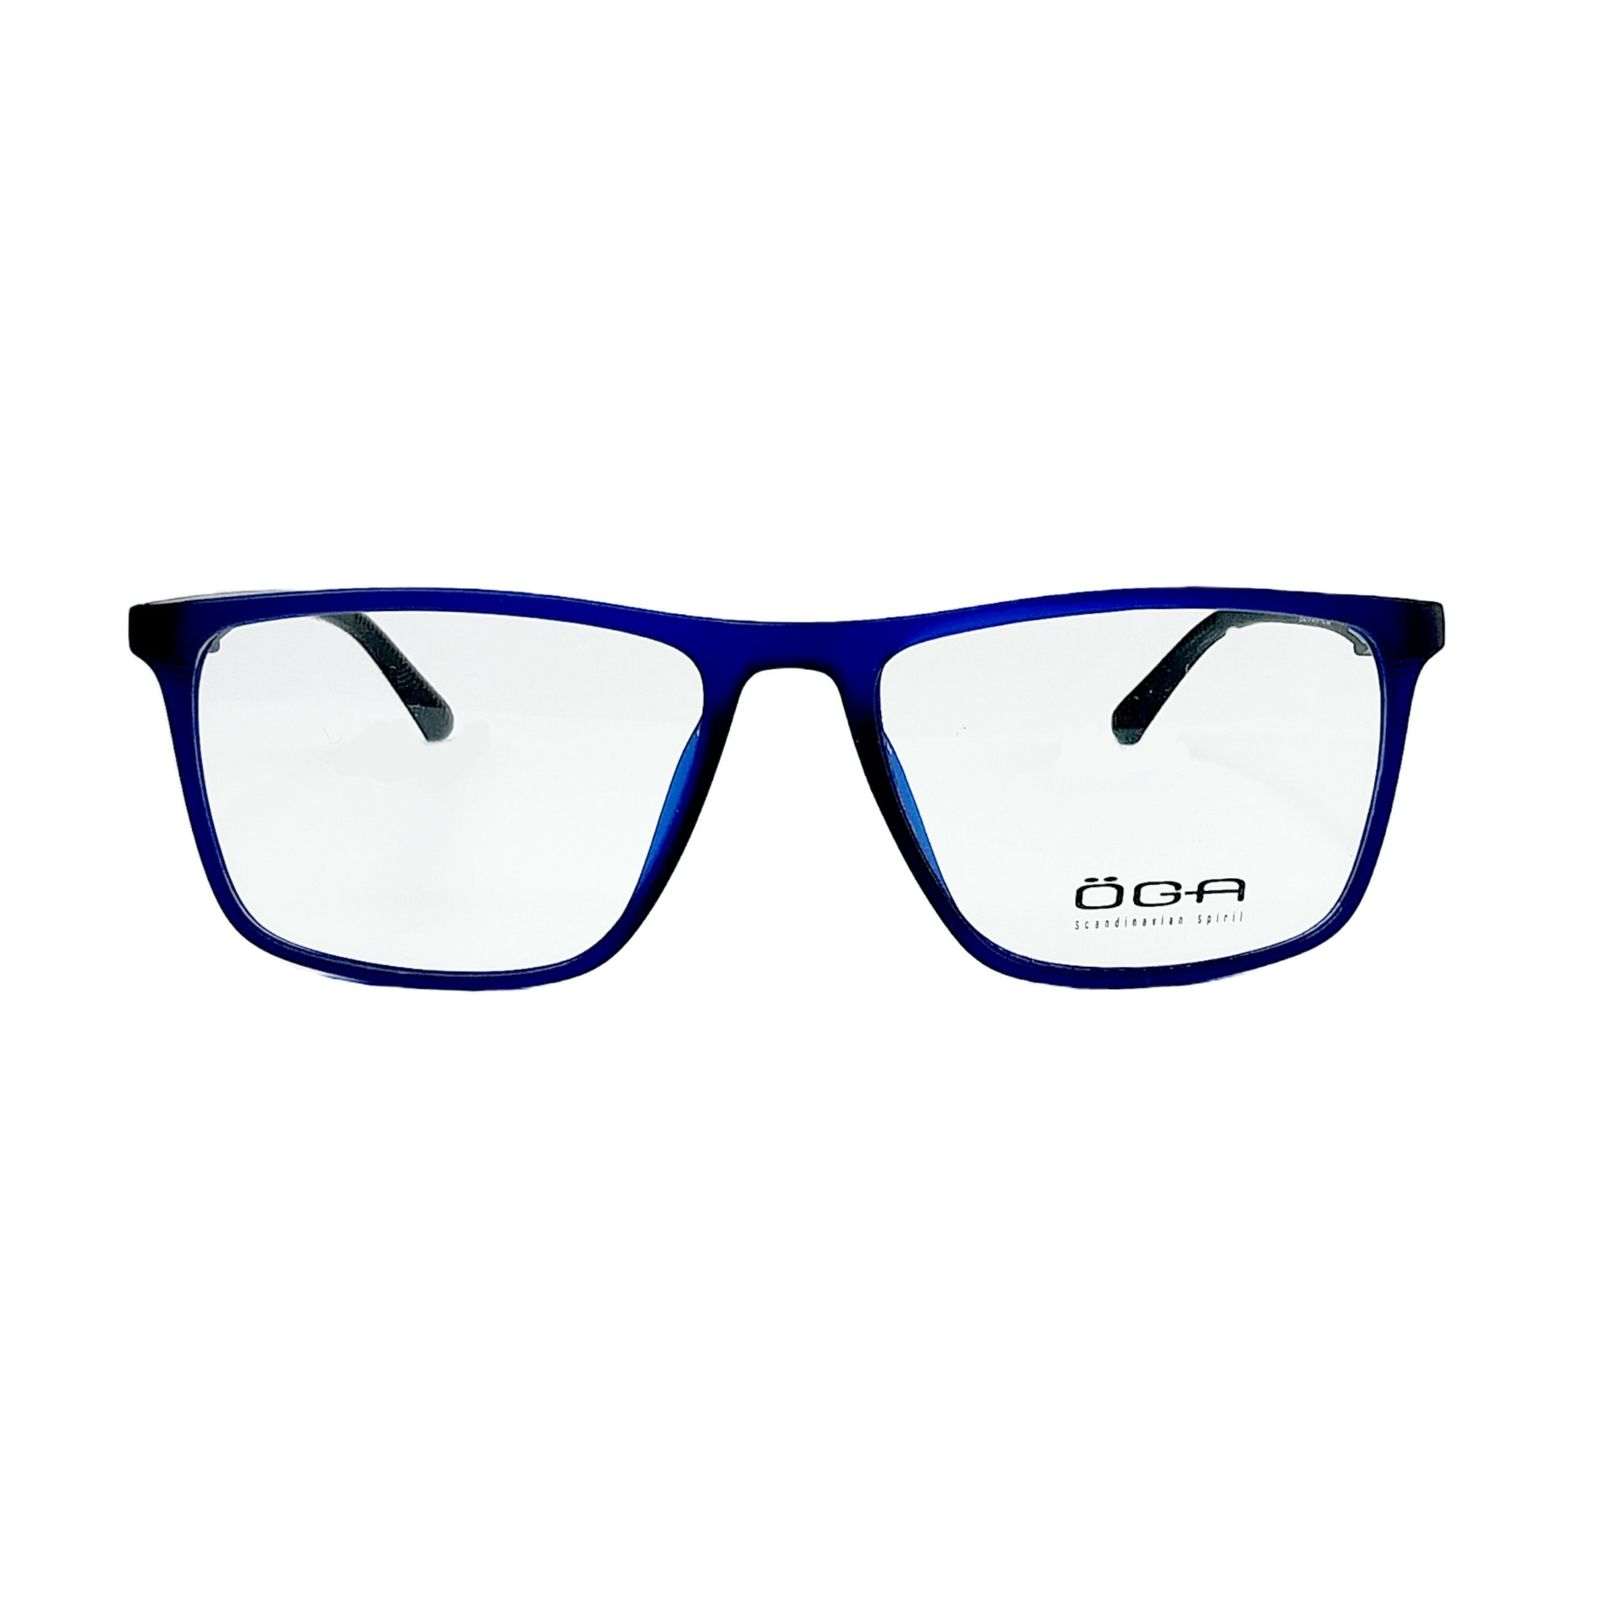 فریم عینک طبی اوگا مدل 3380 -  - 1